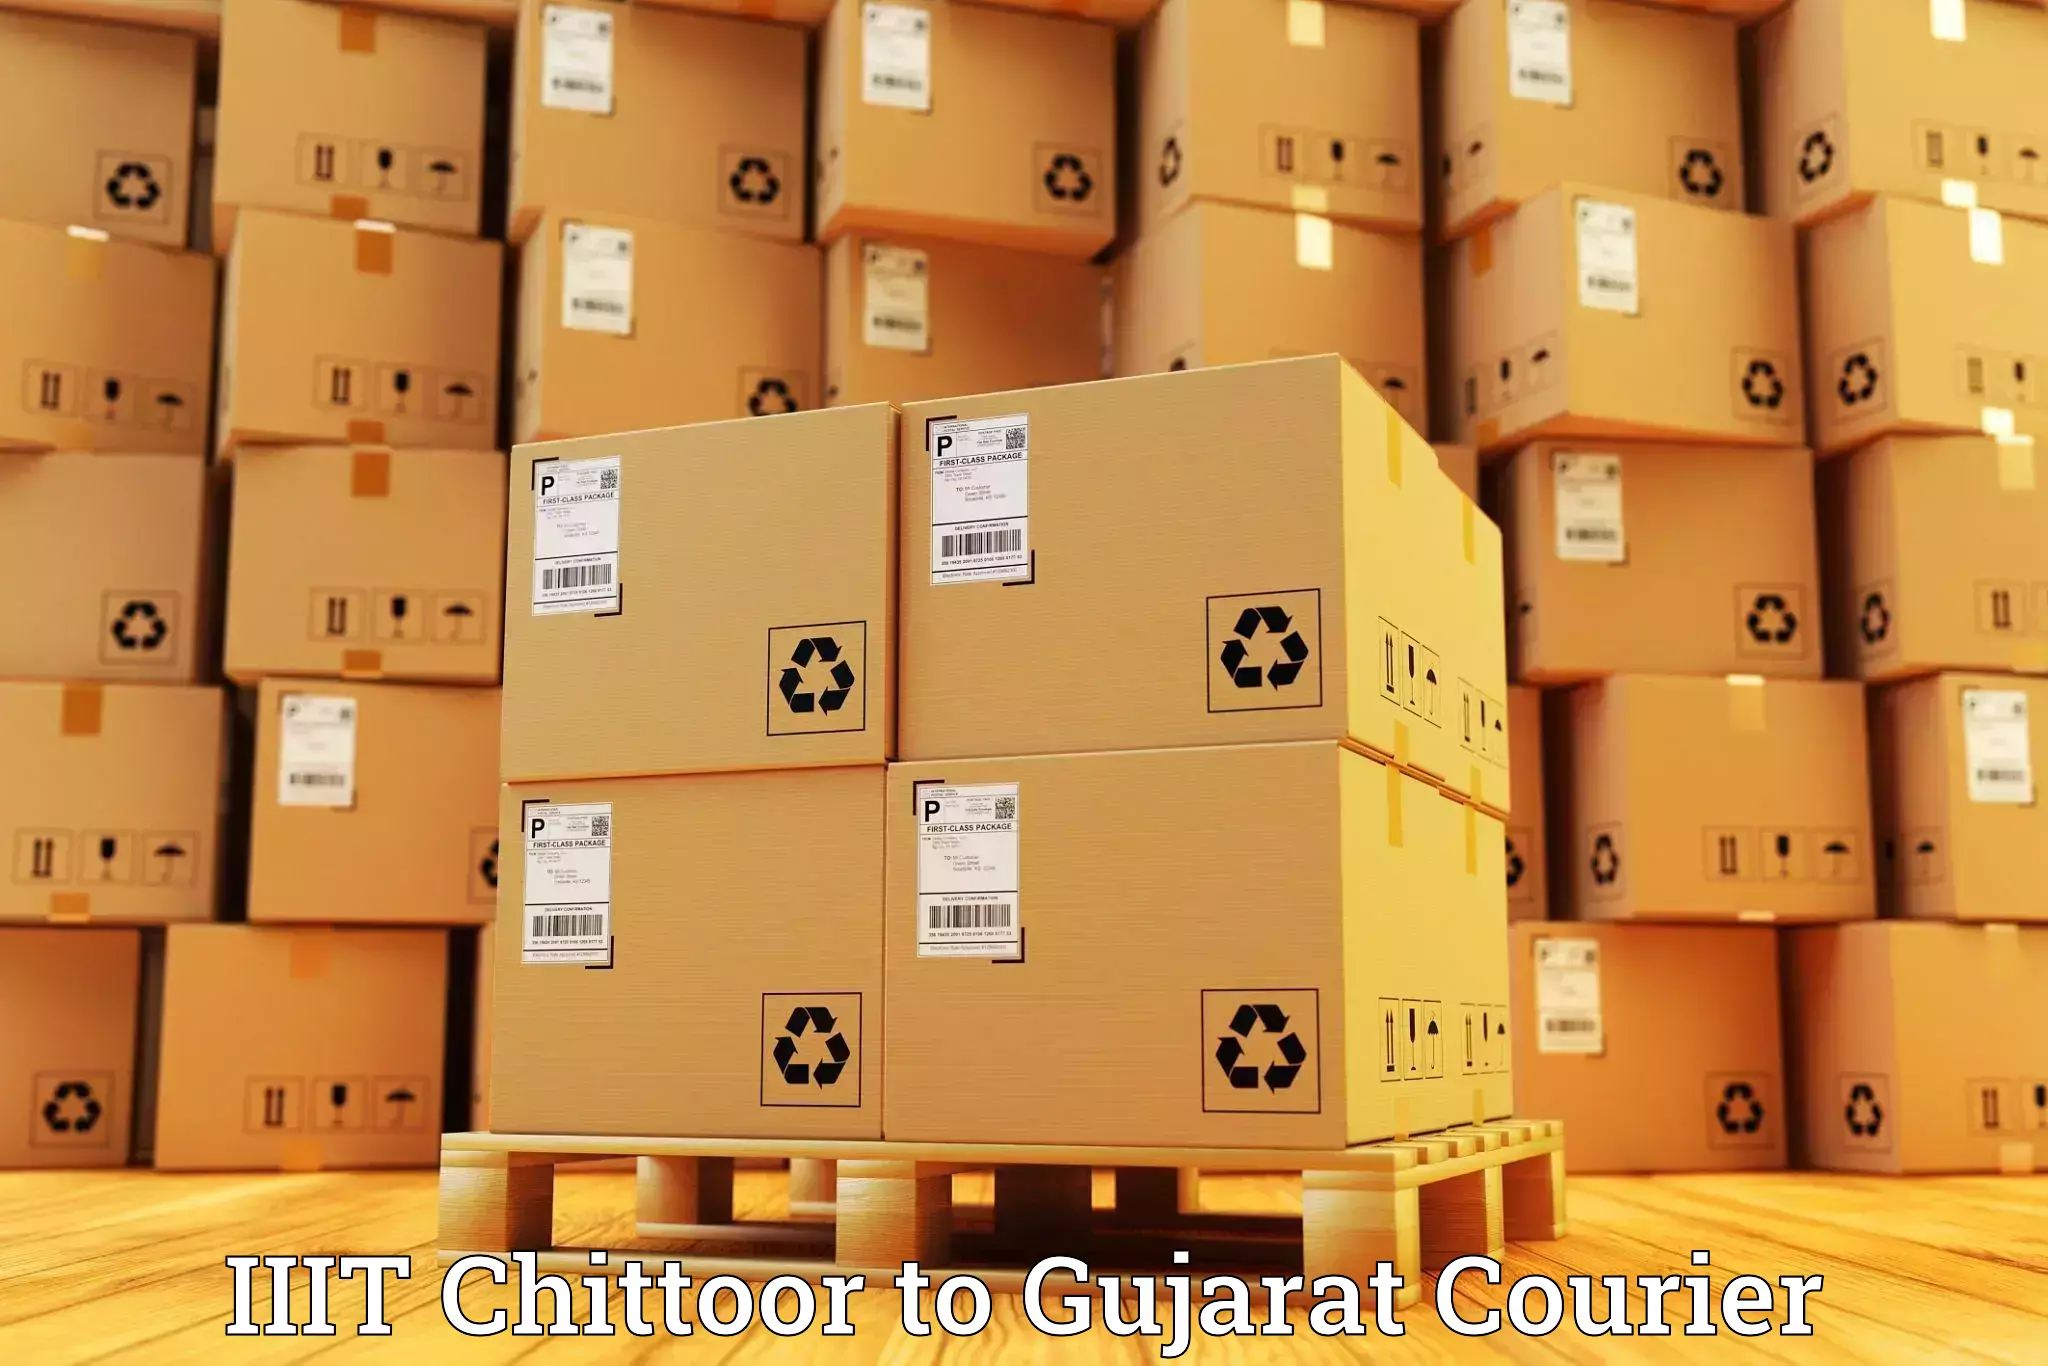 Personal courier services in IIIT Chittoor to IIIT Surat